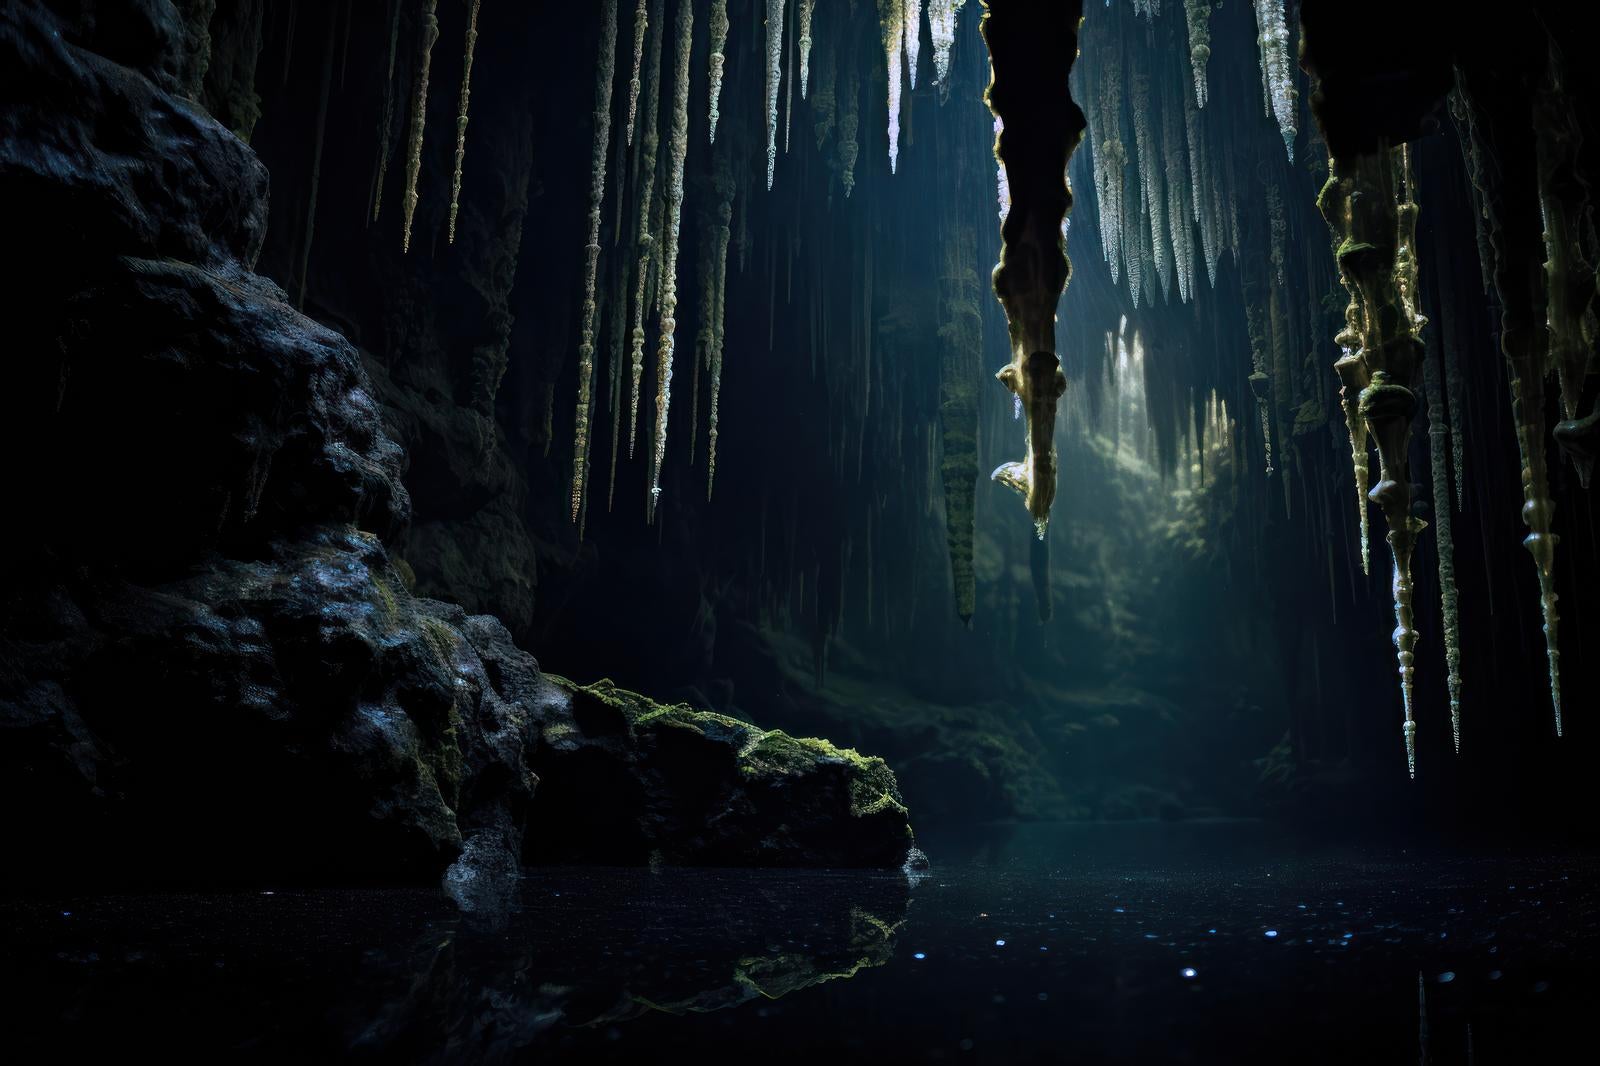 「鍾乳洞の地下水 泉が生み出す鍾乳石の物語」の写真